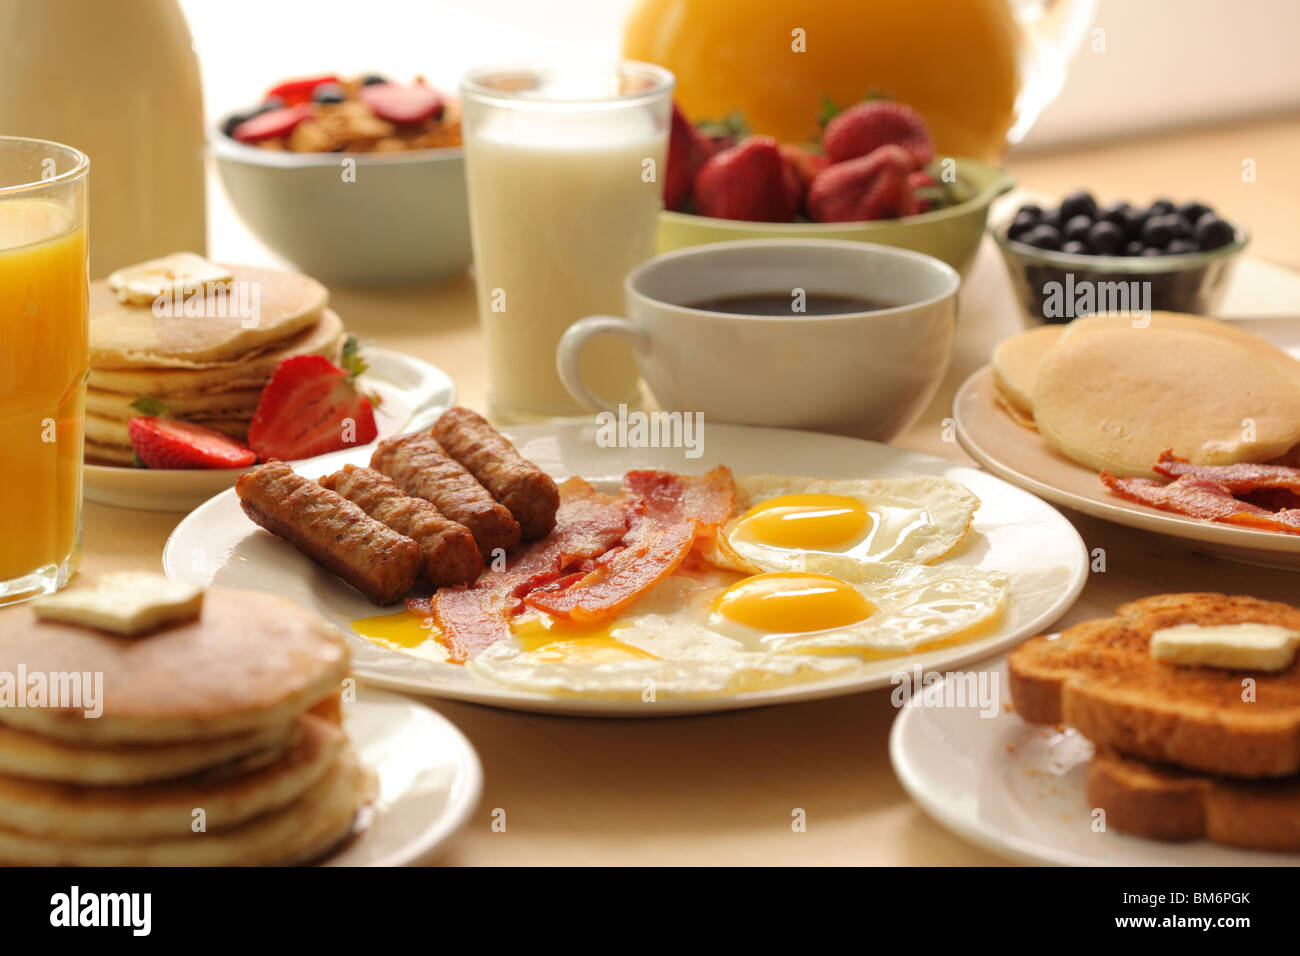 Desayuno, salchicha, tocino, huevos, tostadas, café, cereales, fruta, tostadas y tortitas Foto de stock